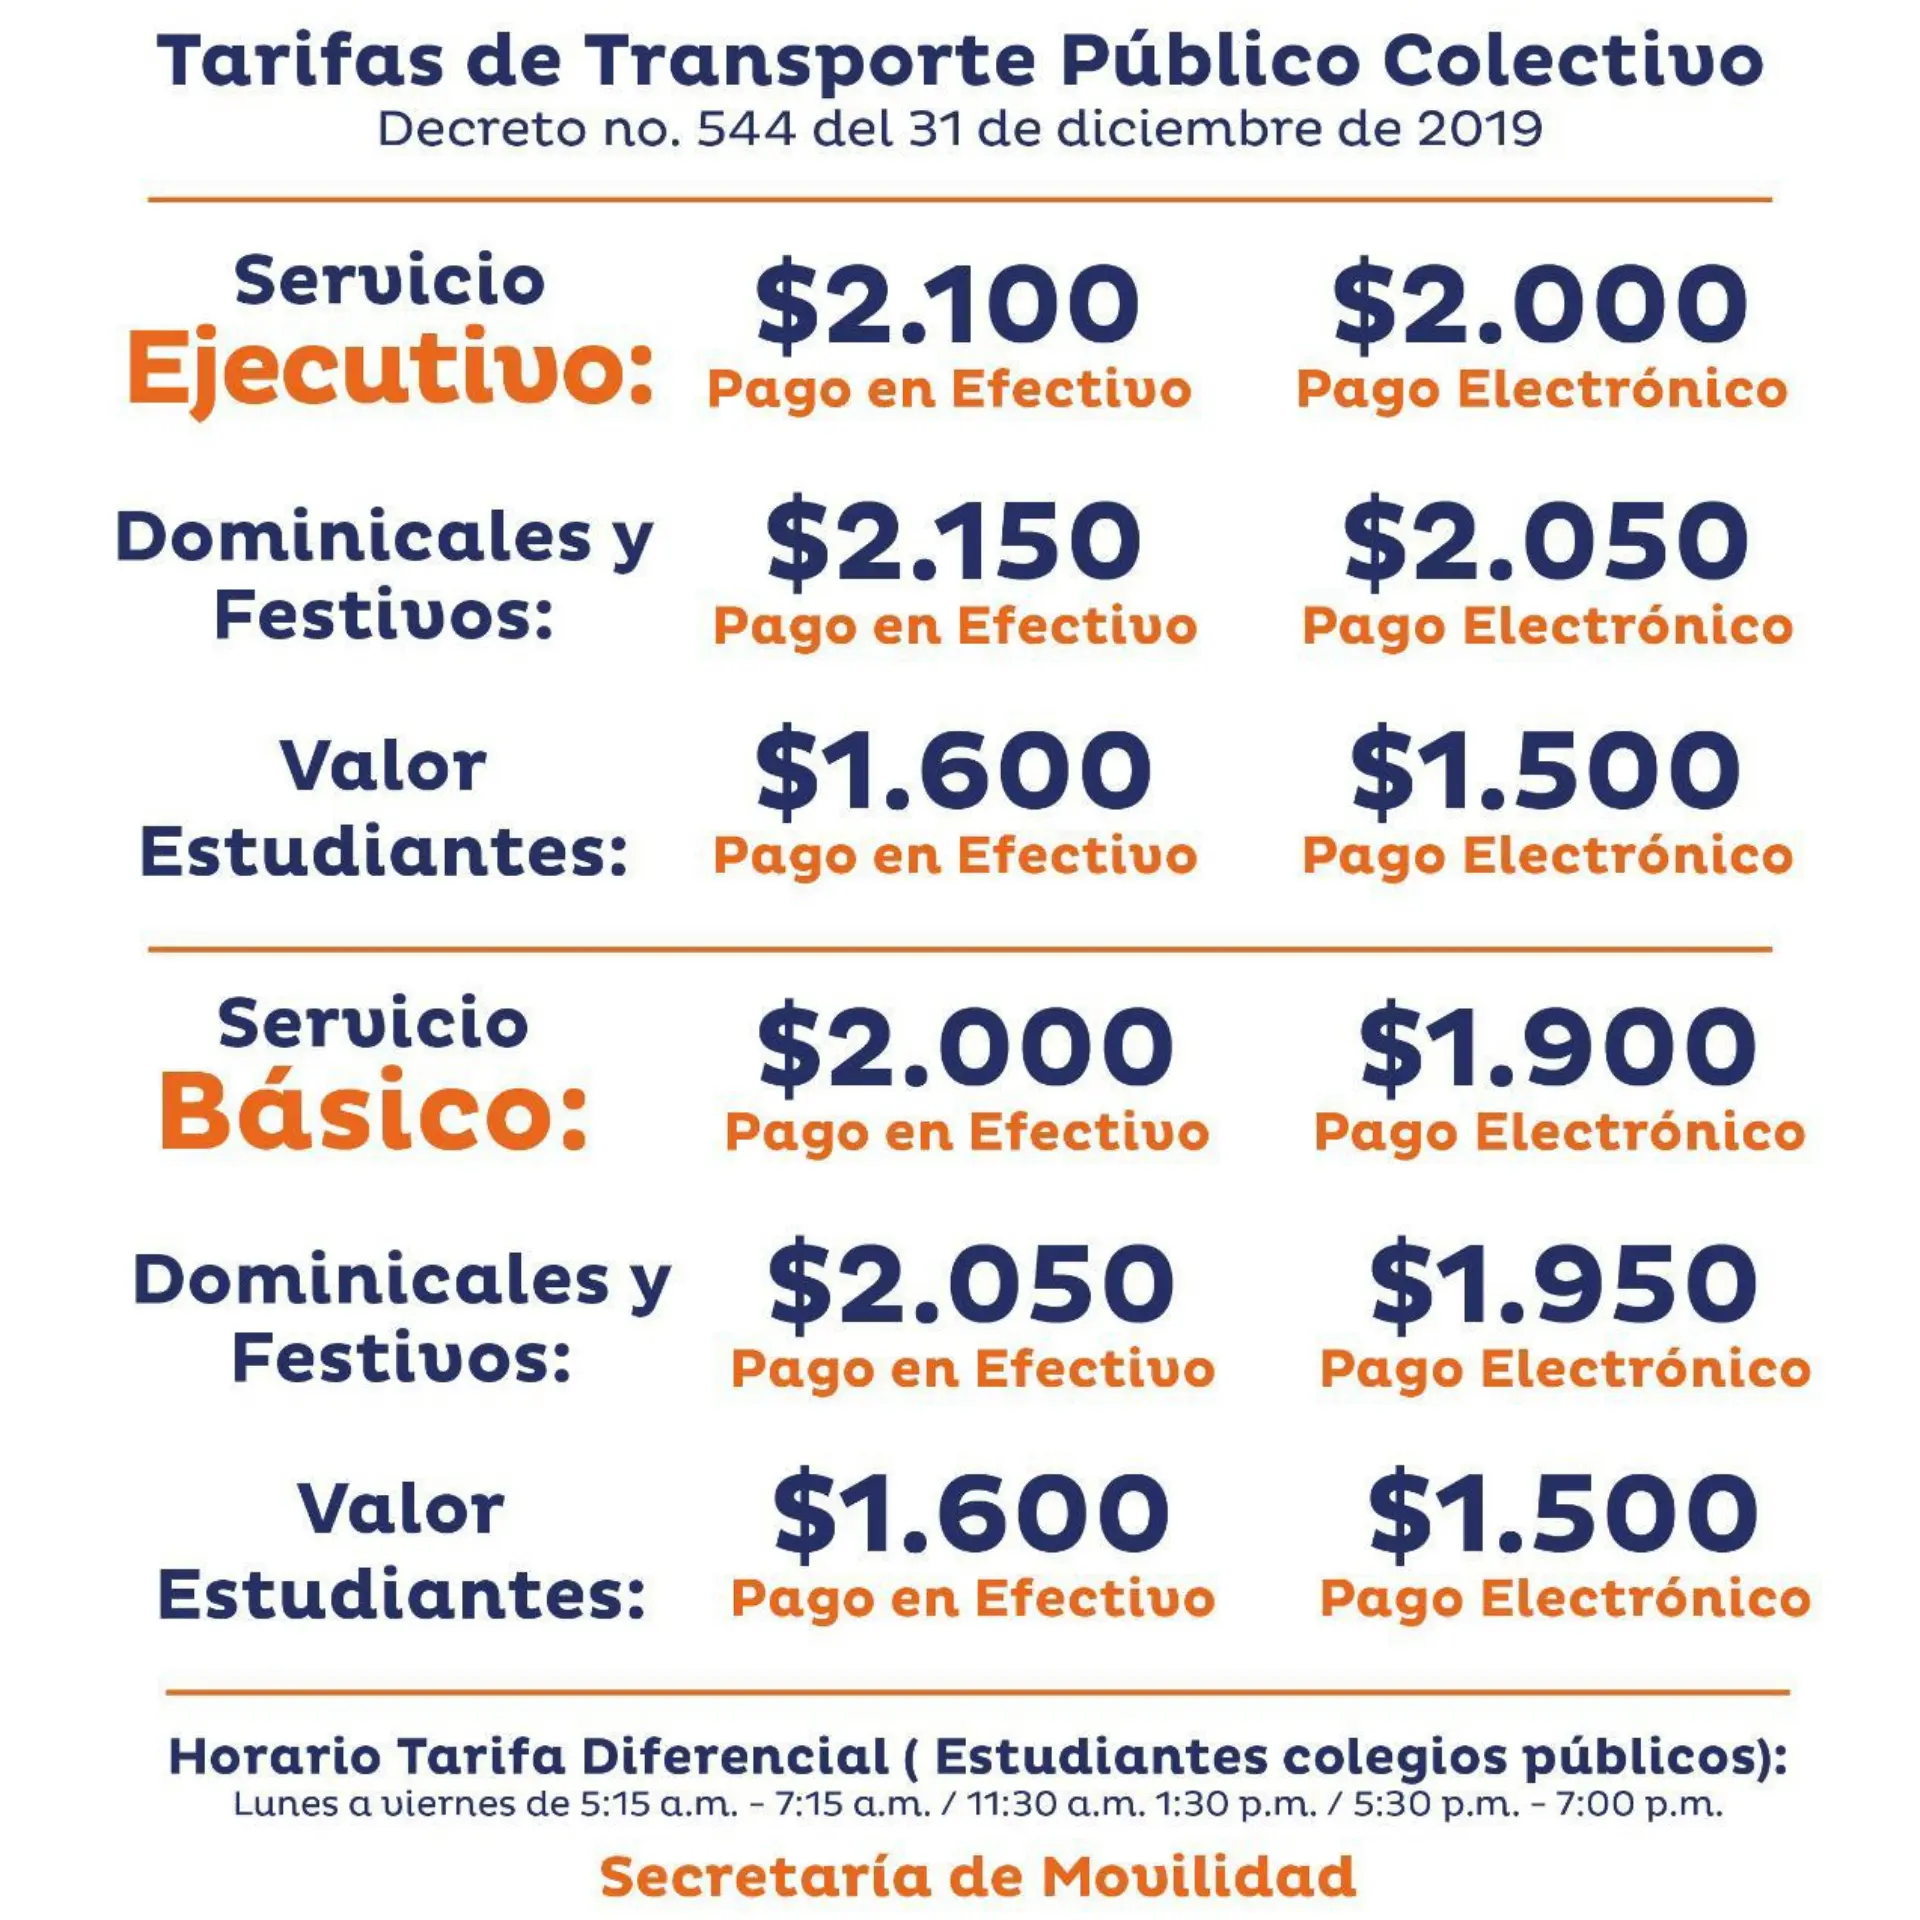 costos de fletes de santa marta a barranquilla - Cuánto cobra un taxi de Santa Marta a Barranquilla